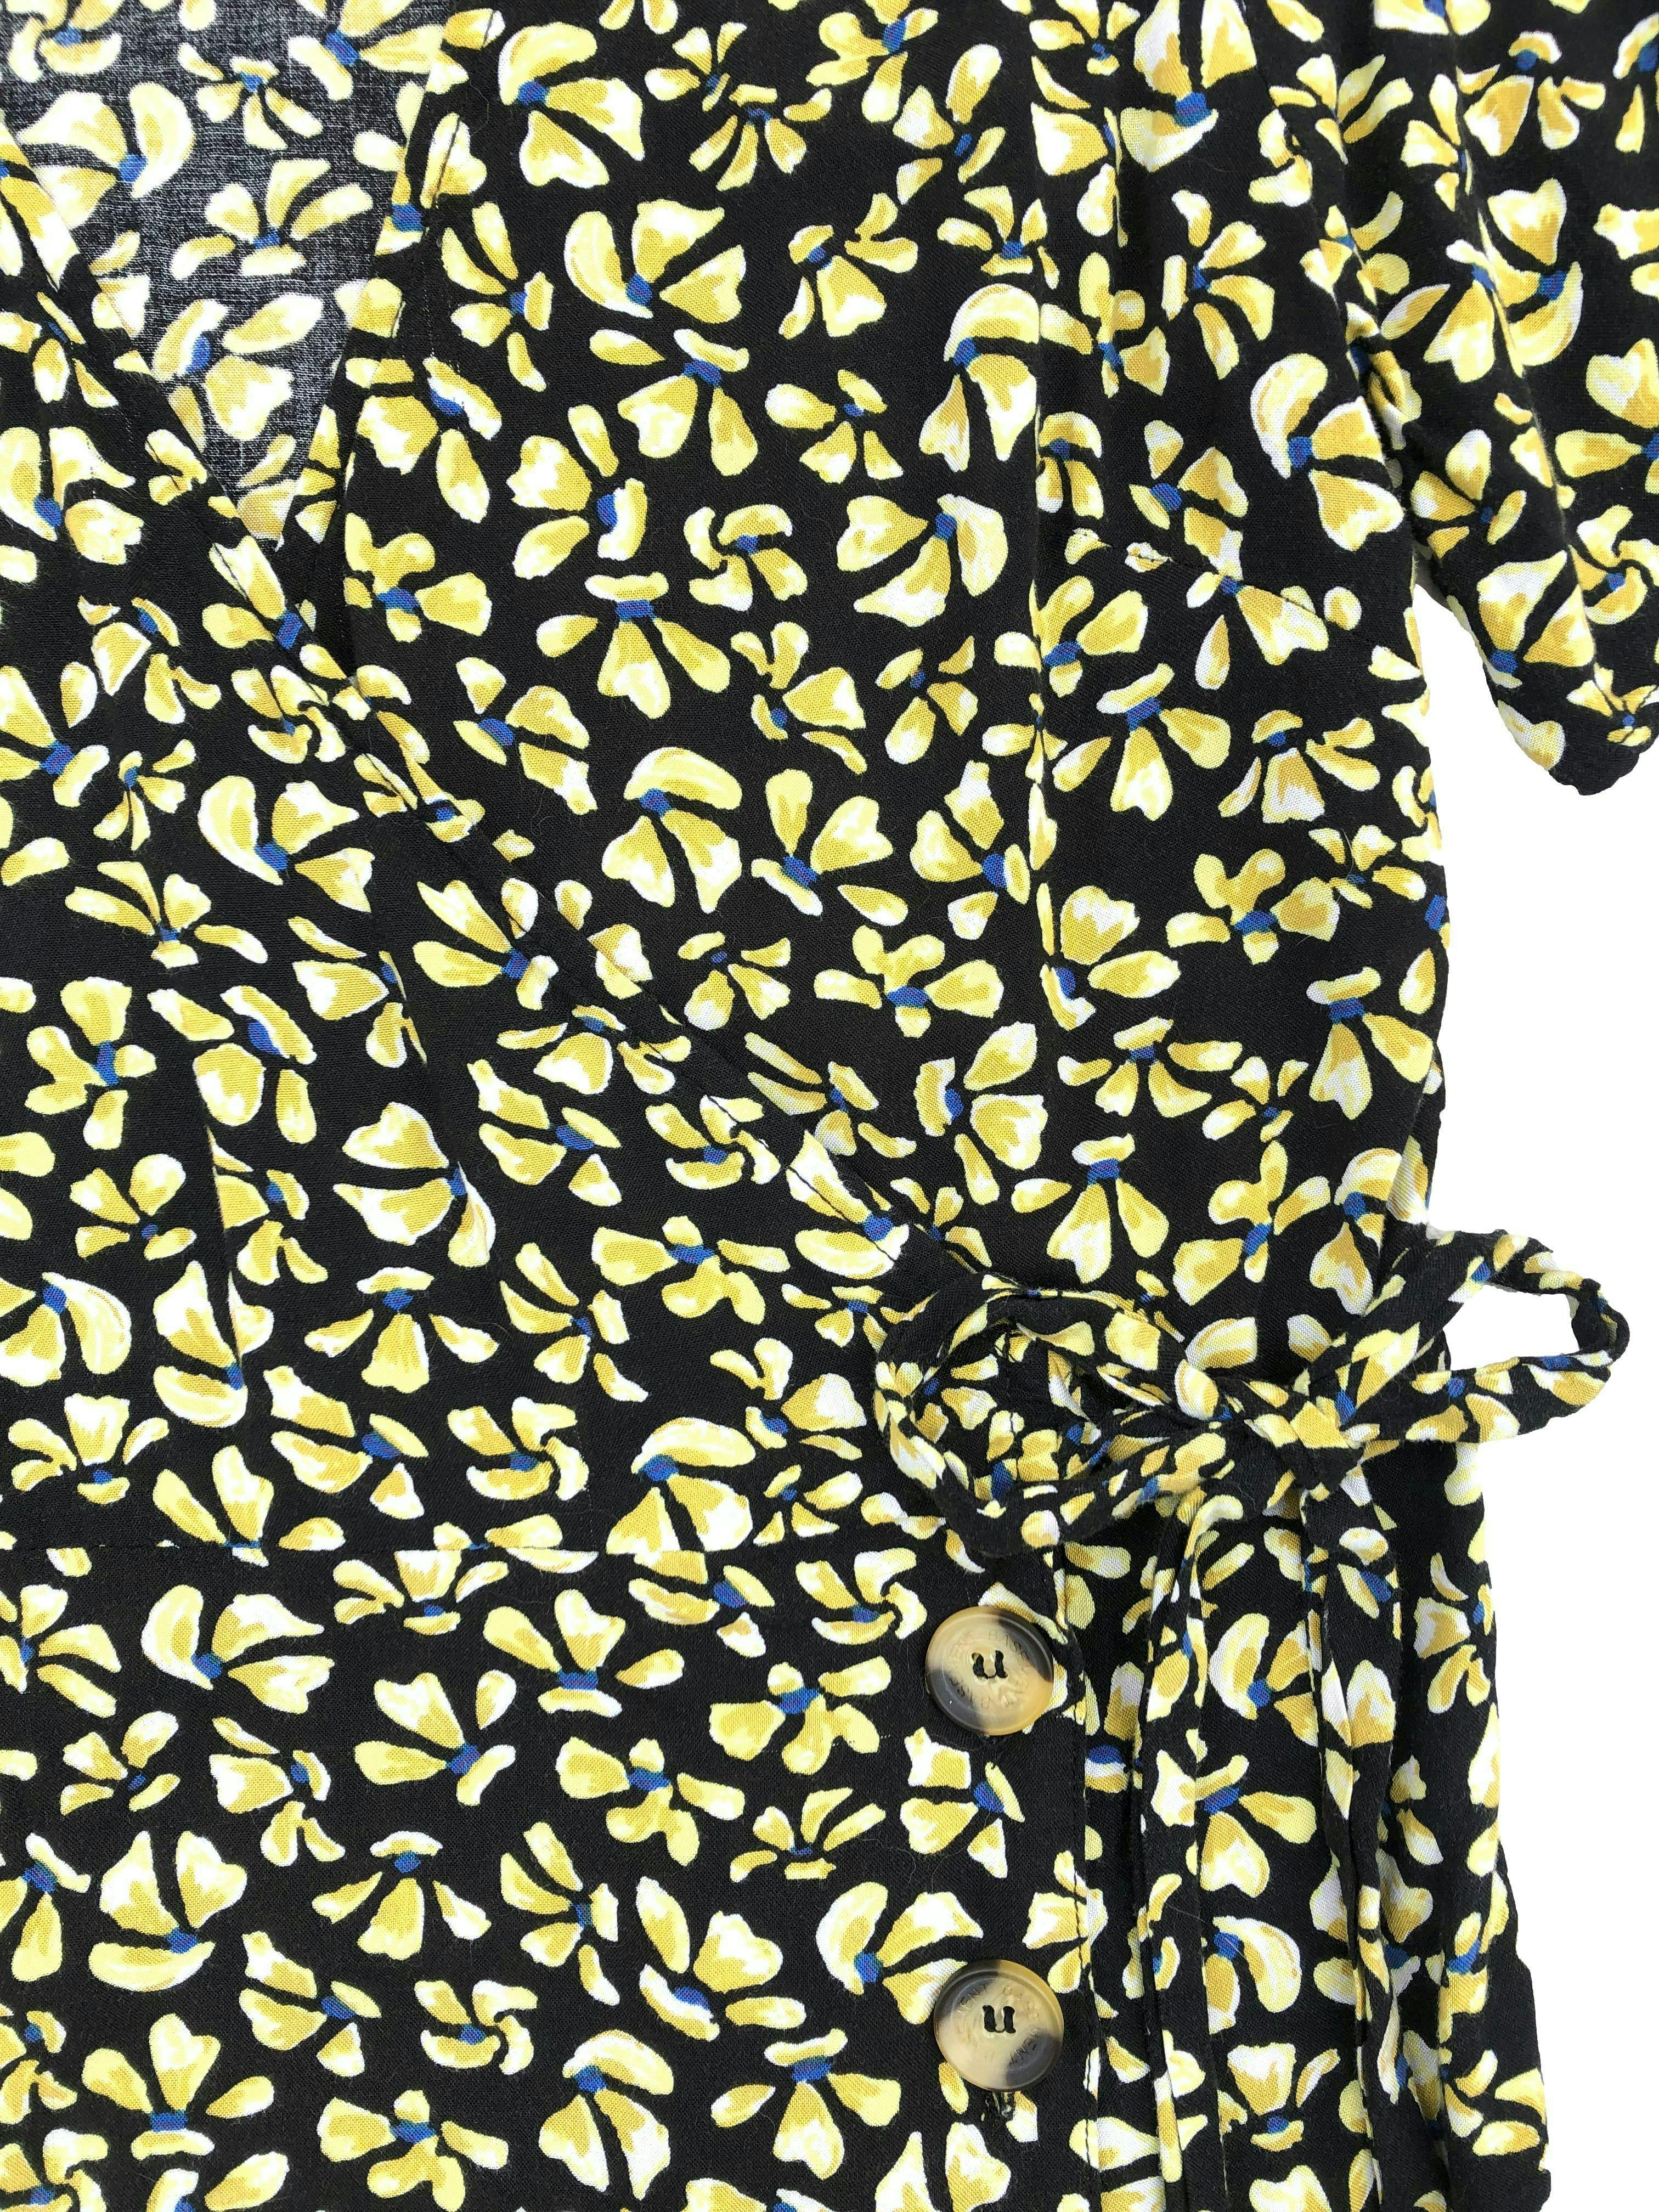 Vestido Basement negro con flores amarillas, cruzado para amarrar y botones en falda, tela tipo chalis.  Busto 92cm. Largo 88cm.